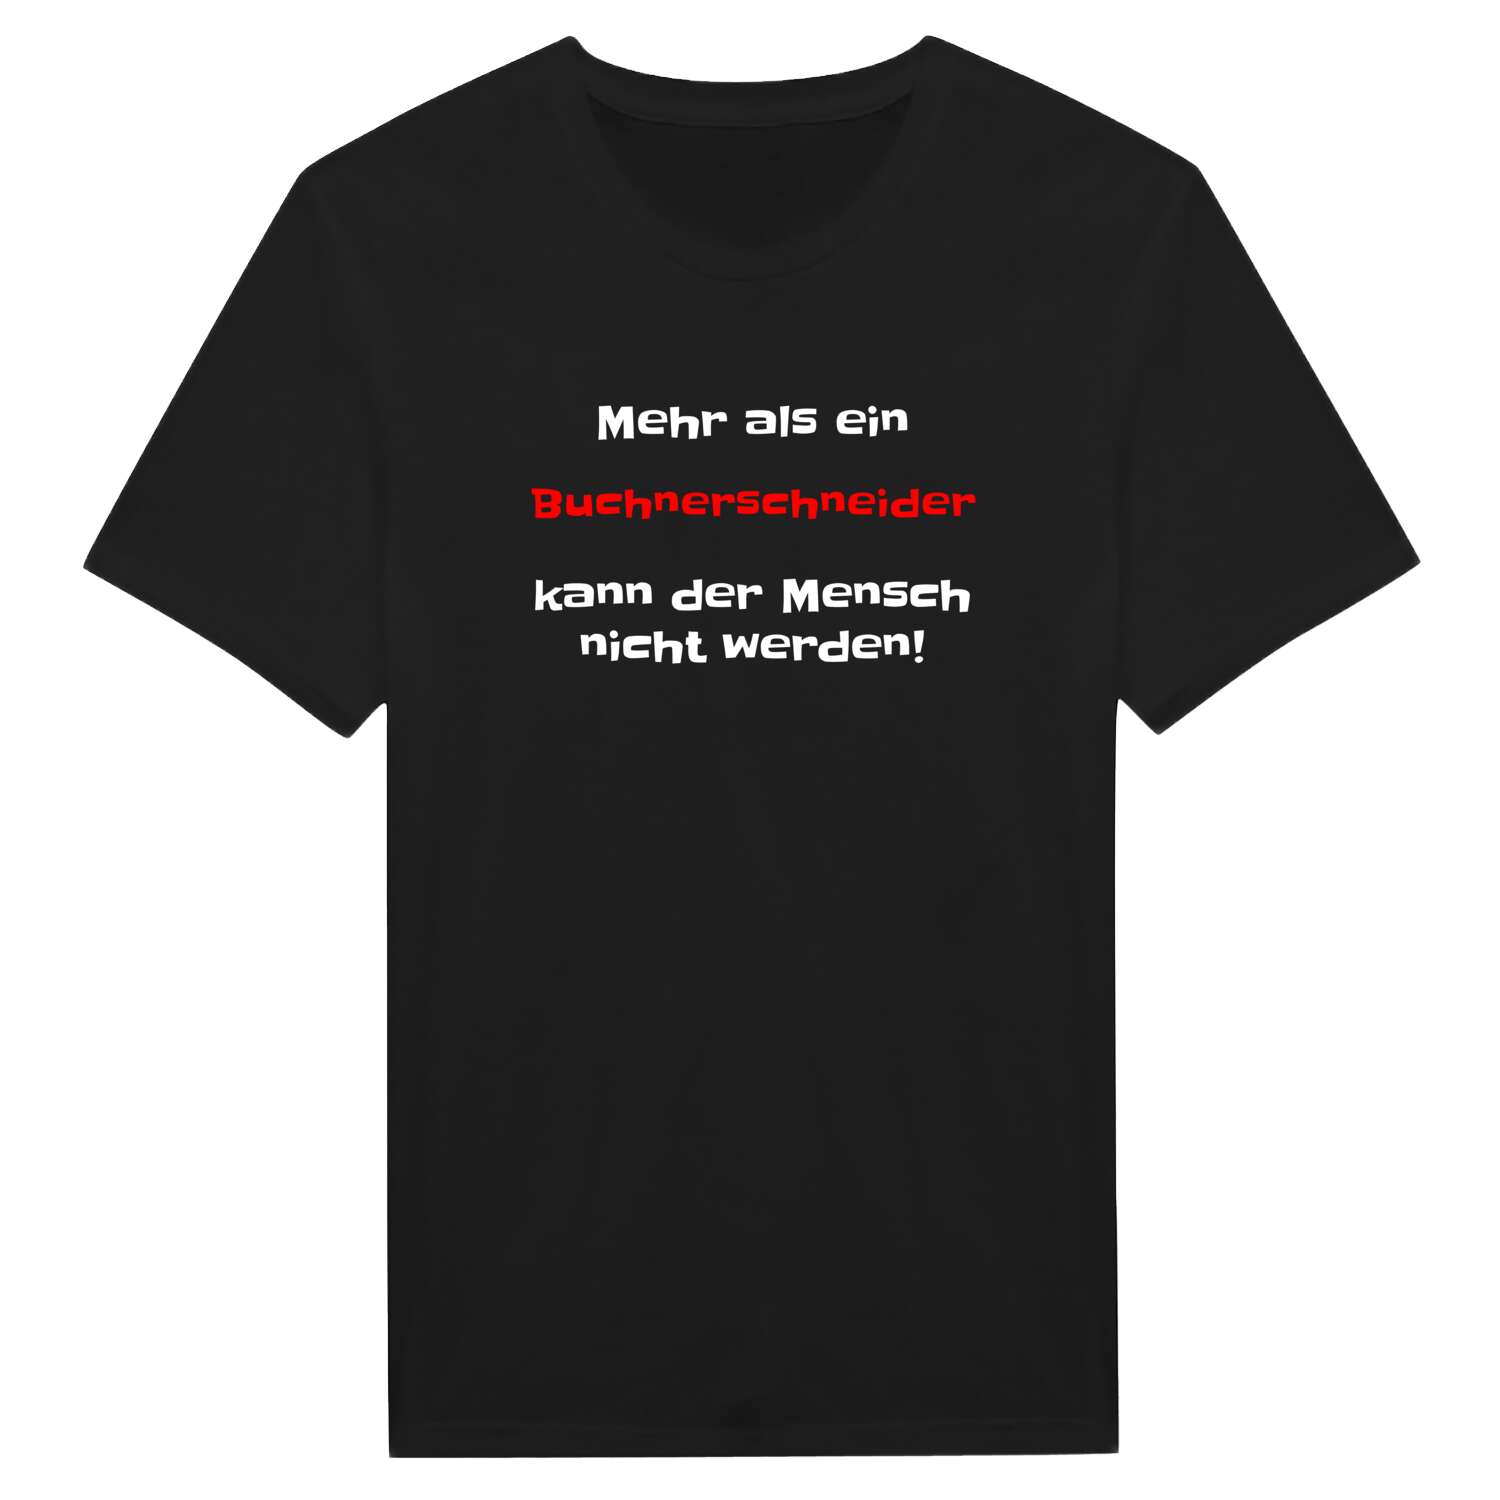 Buchnerschneid T-Shirt »Mehr als ein«